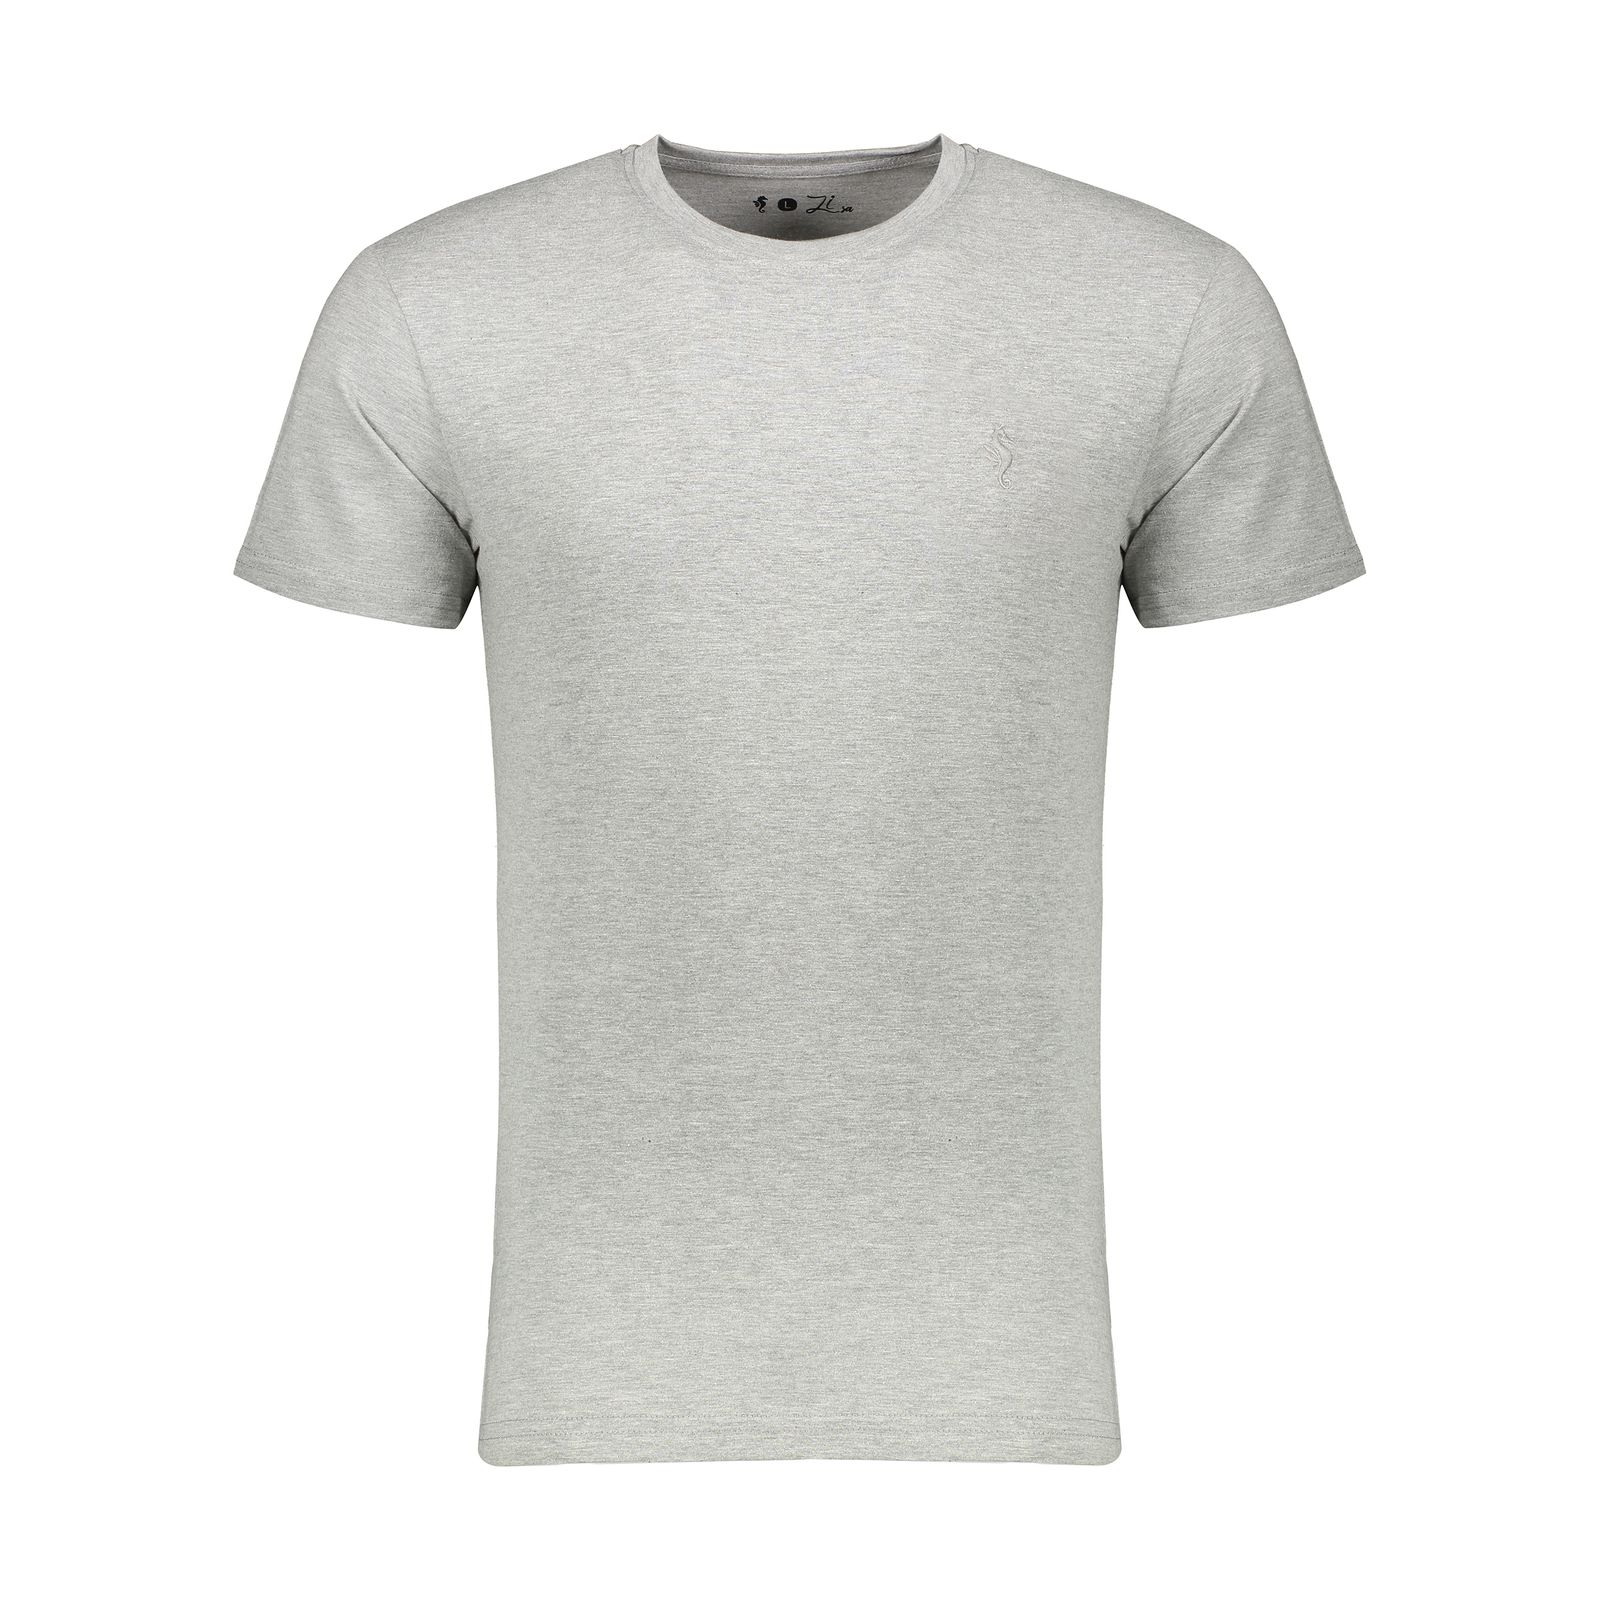 تی شرت مردانه زی سا مدل 153118493 -  - 1